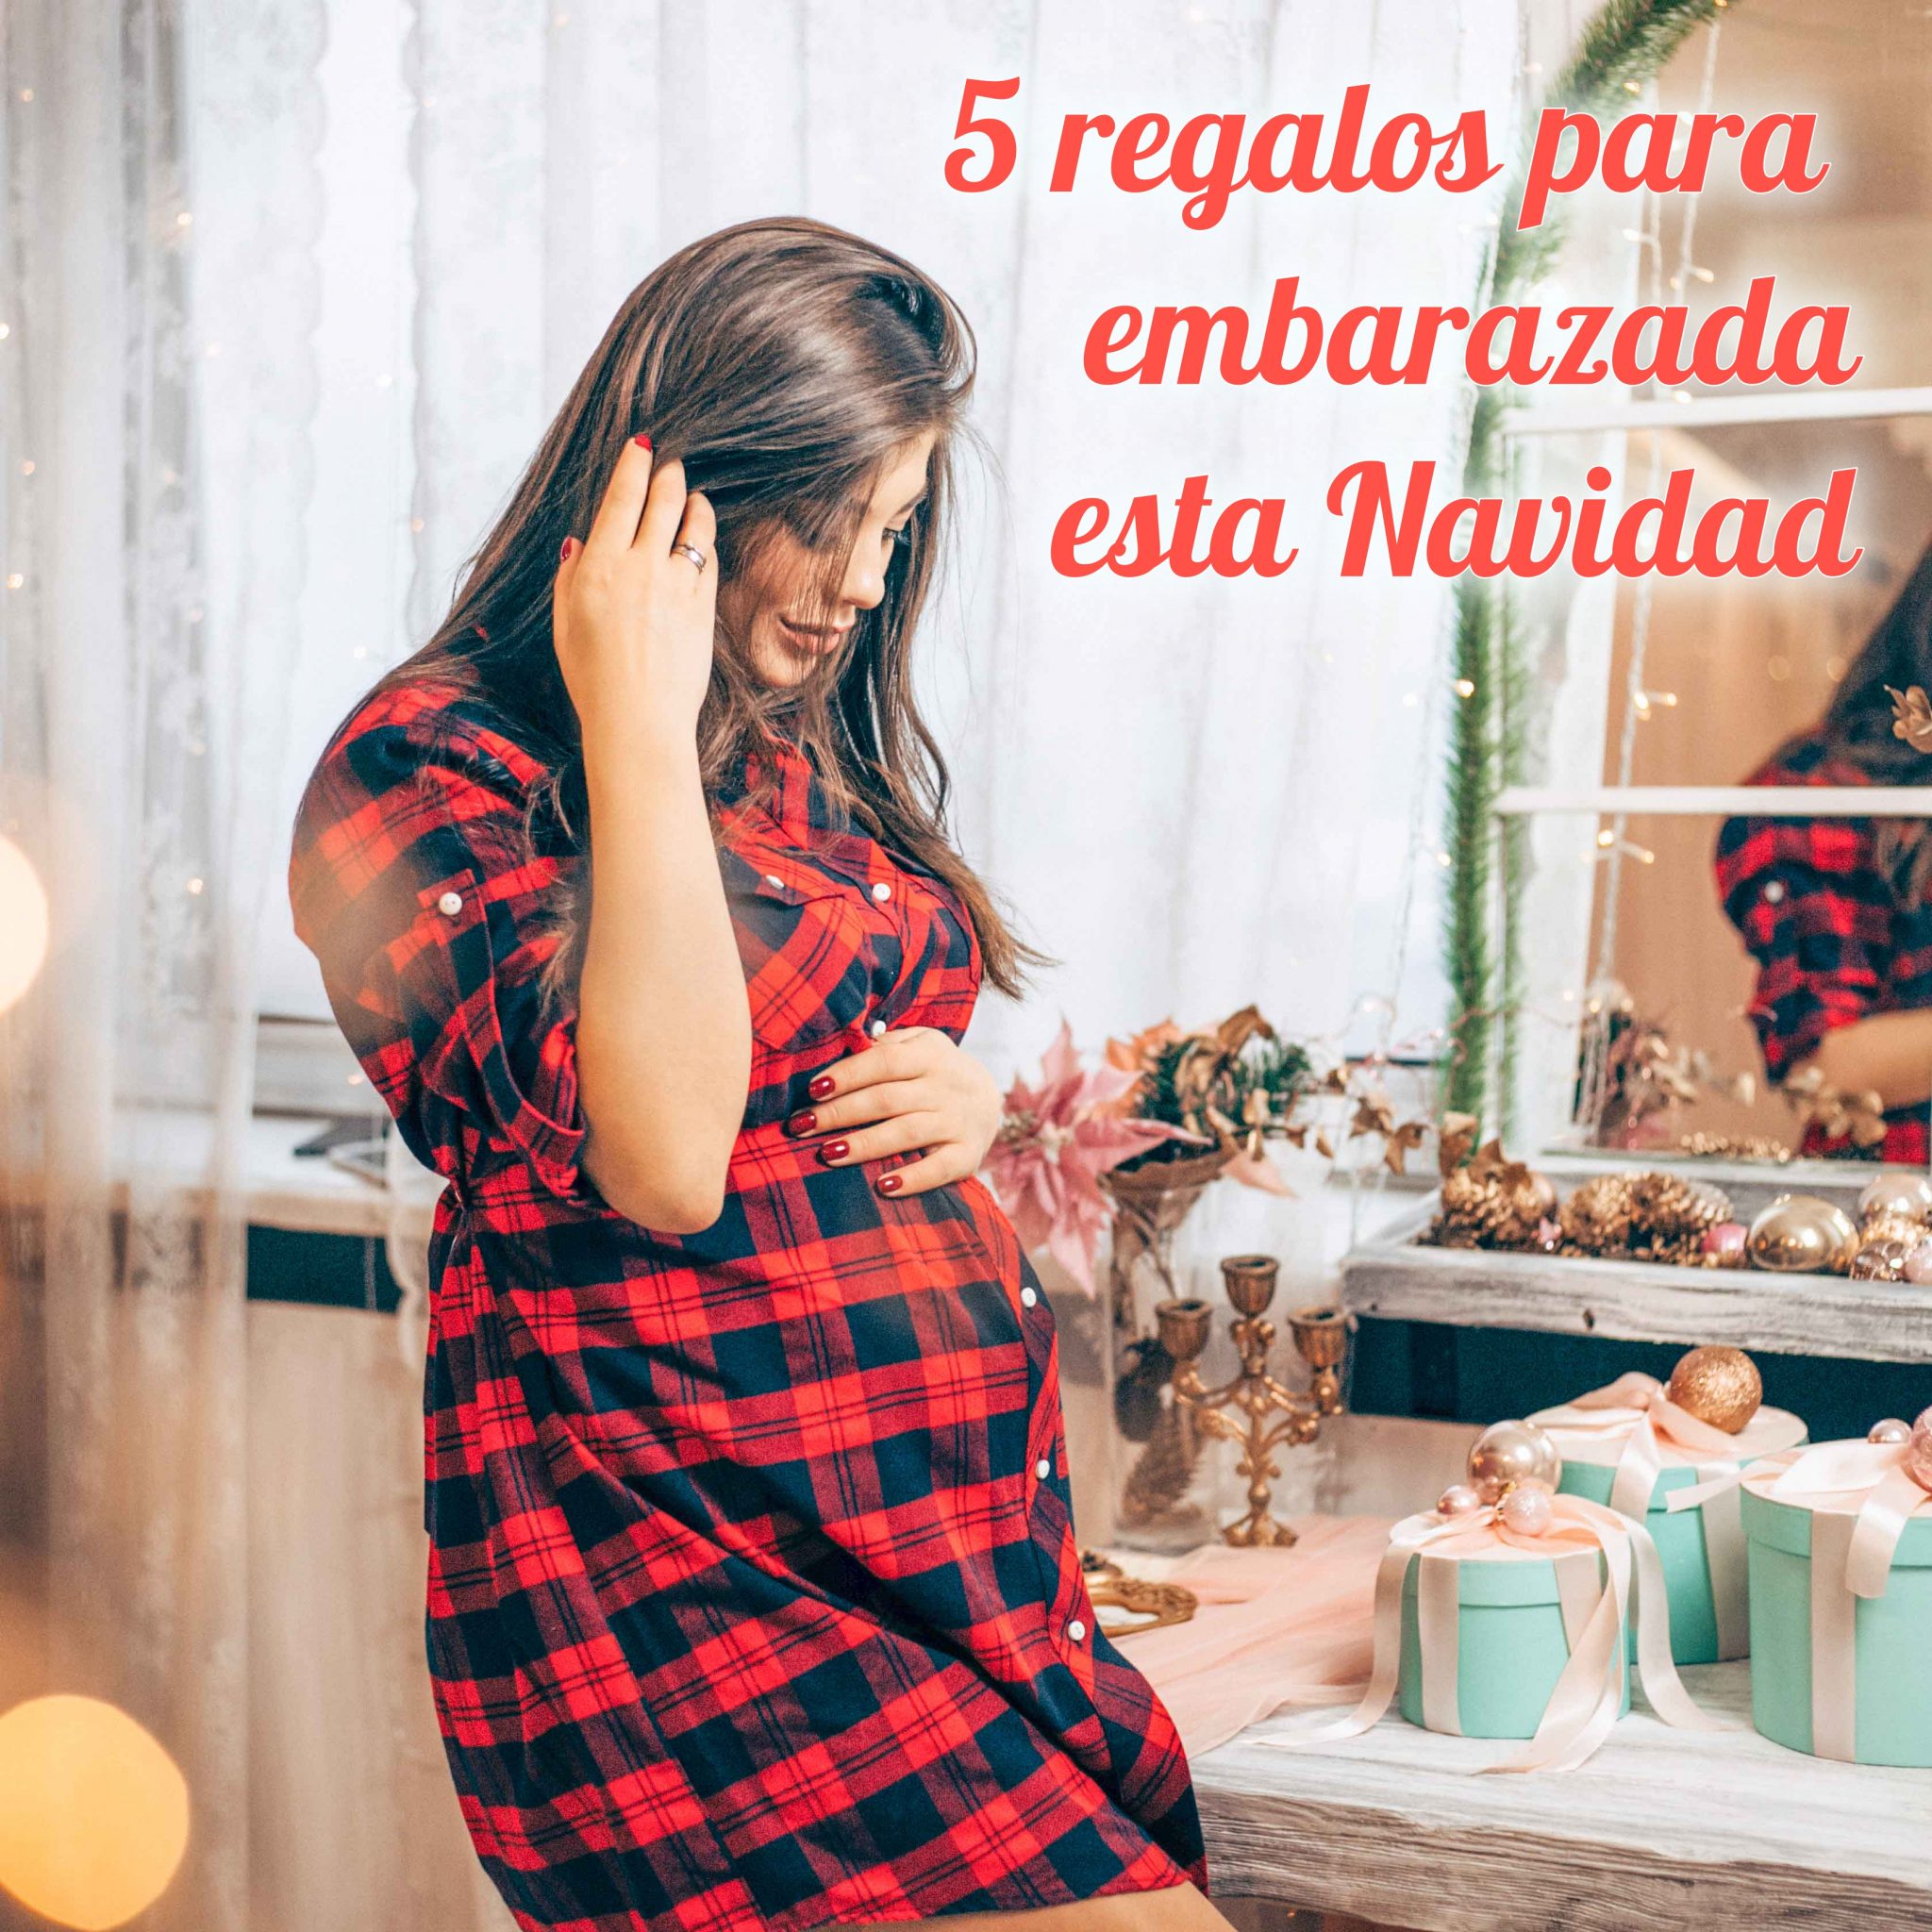 5 regalos para embarazadas esta navidad - Mimitos Home